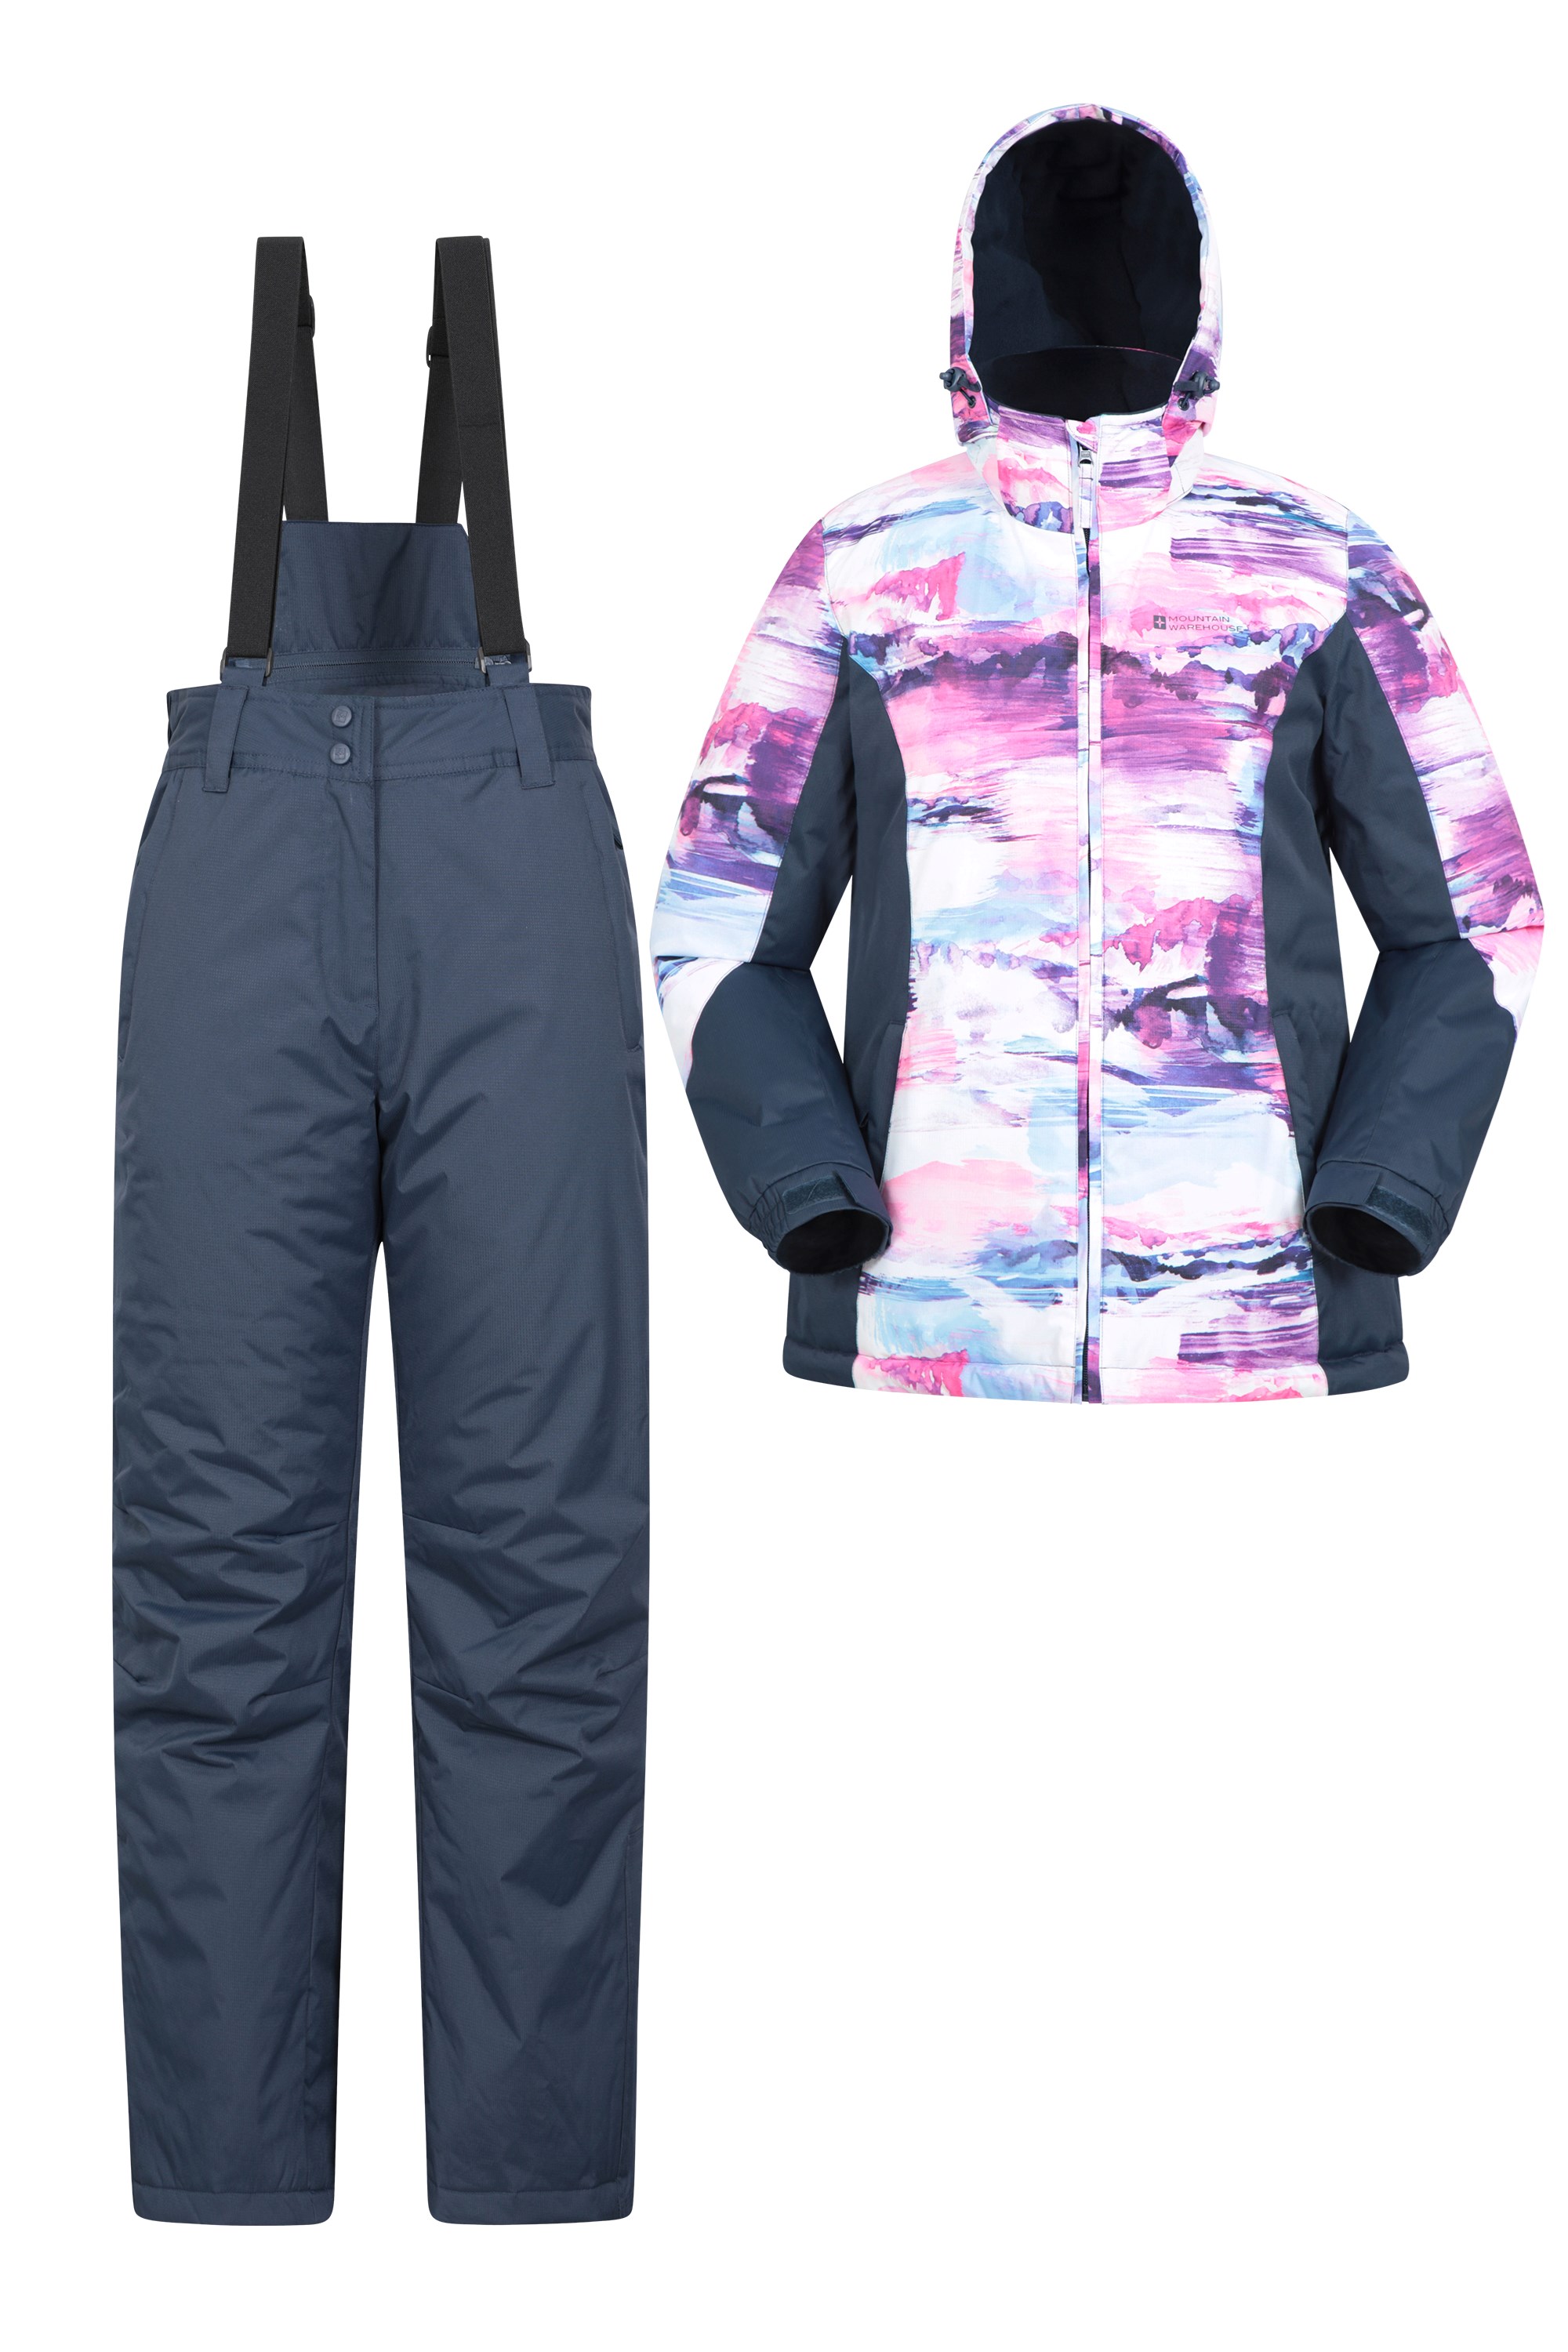 Hiver Mountain Warehouse Ensemble de Veste et Pantalon de Ski pour Enfant Robe Interne intégrée Poches Avant Résistant à la Neige Le Snowboard Doublure Polaire 